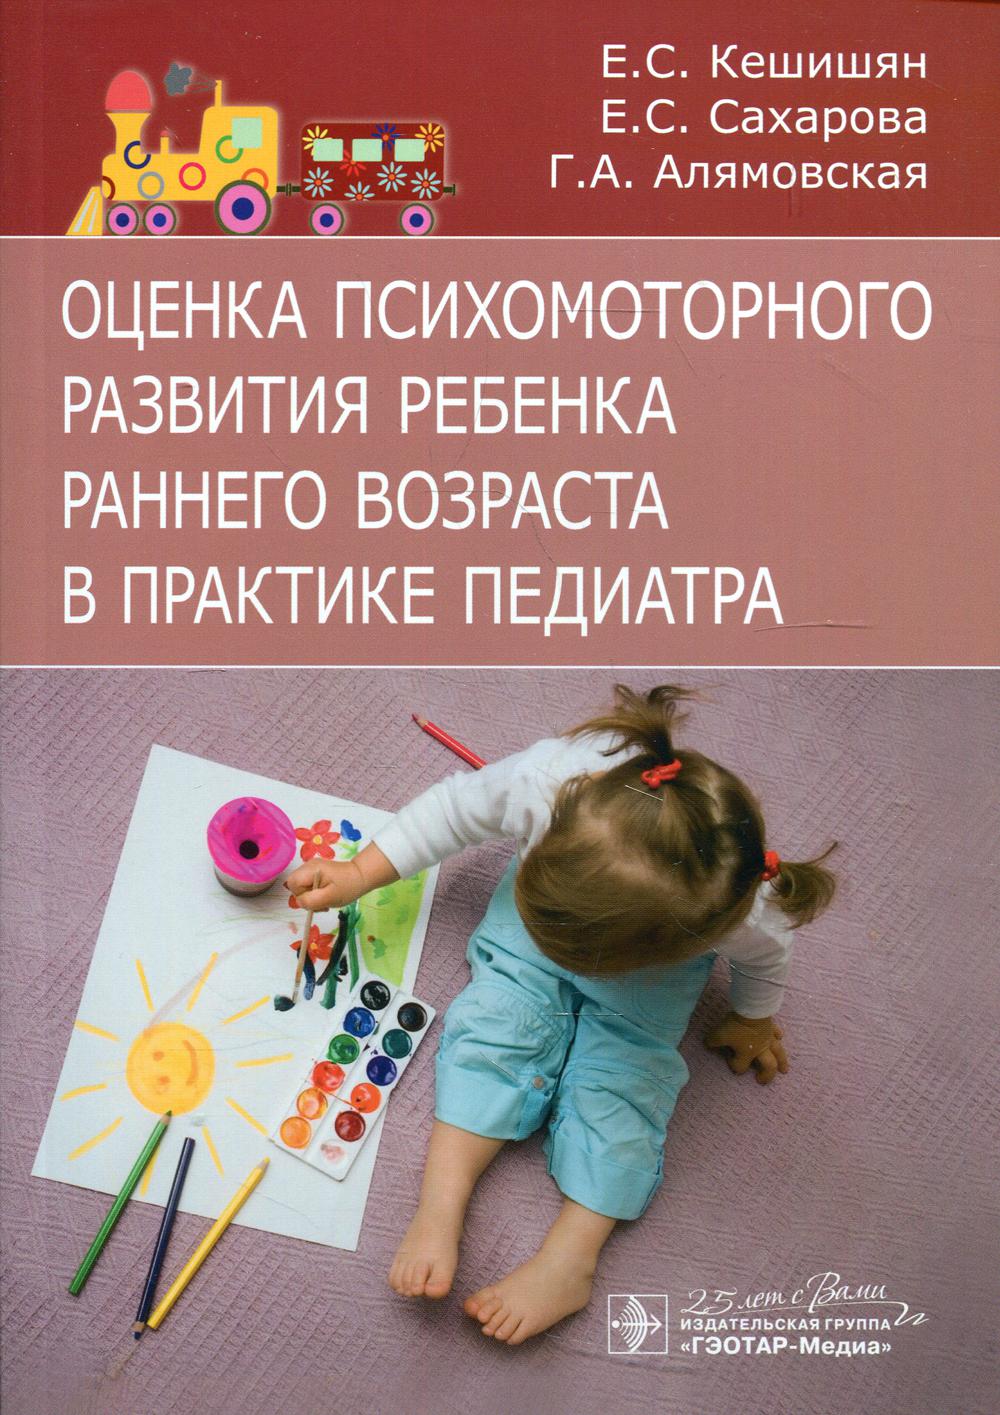 фото Книга оценка психомоторного развития ребенка раннего возраста в практике педиатра гэотар-медиа